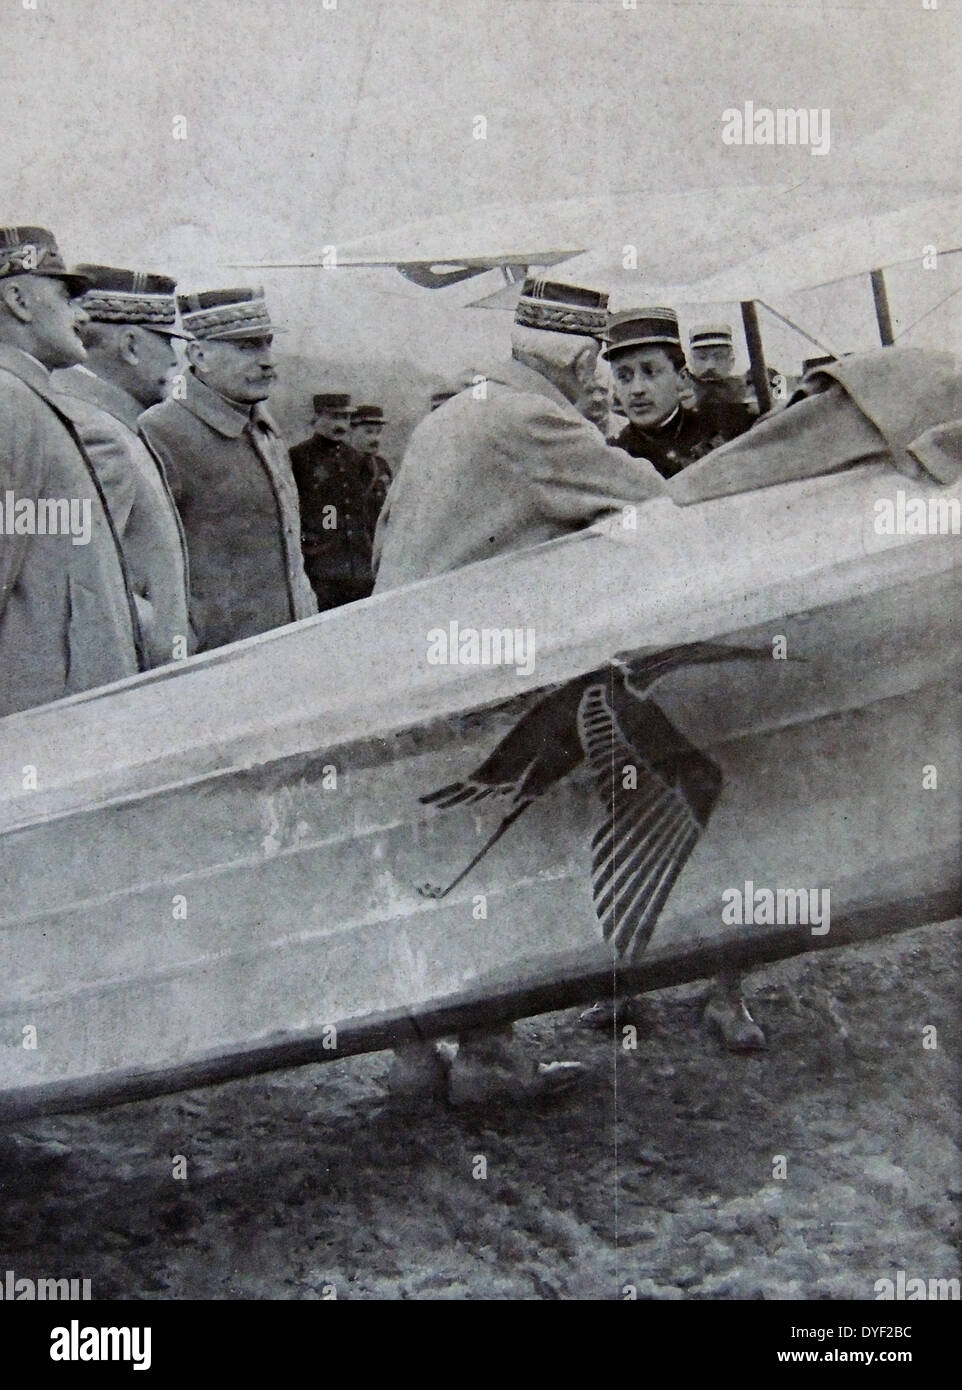 Général Foch et officiers supérieurs de l'armée de l'air française salue le capitaine pilote ace Guynemer en plus d'un aéronef de l'armée française en septembre 1916 aircfraft 1917 Banque D'Images